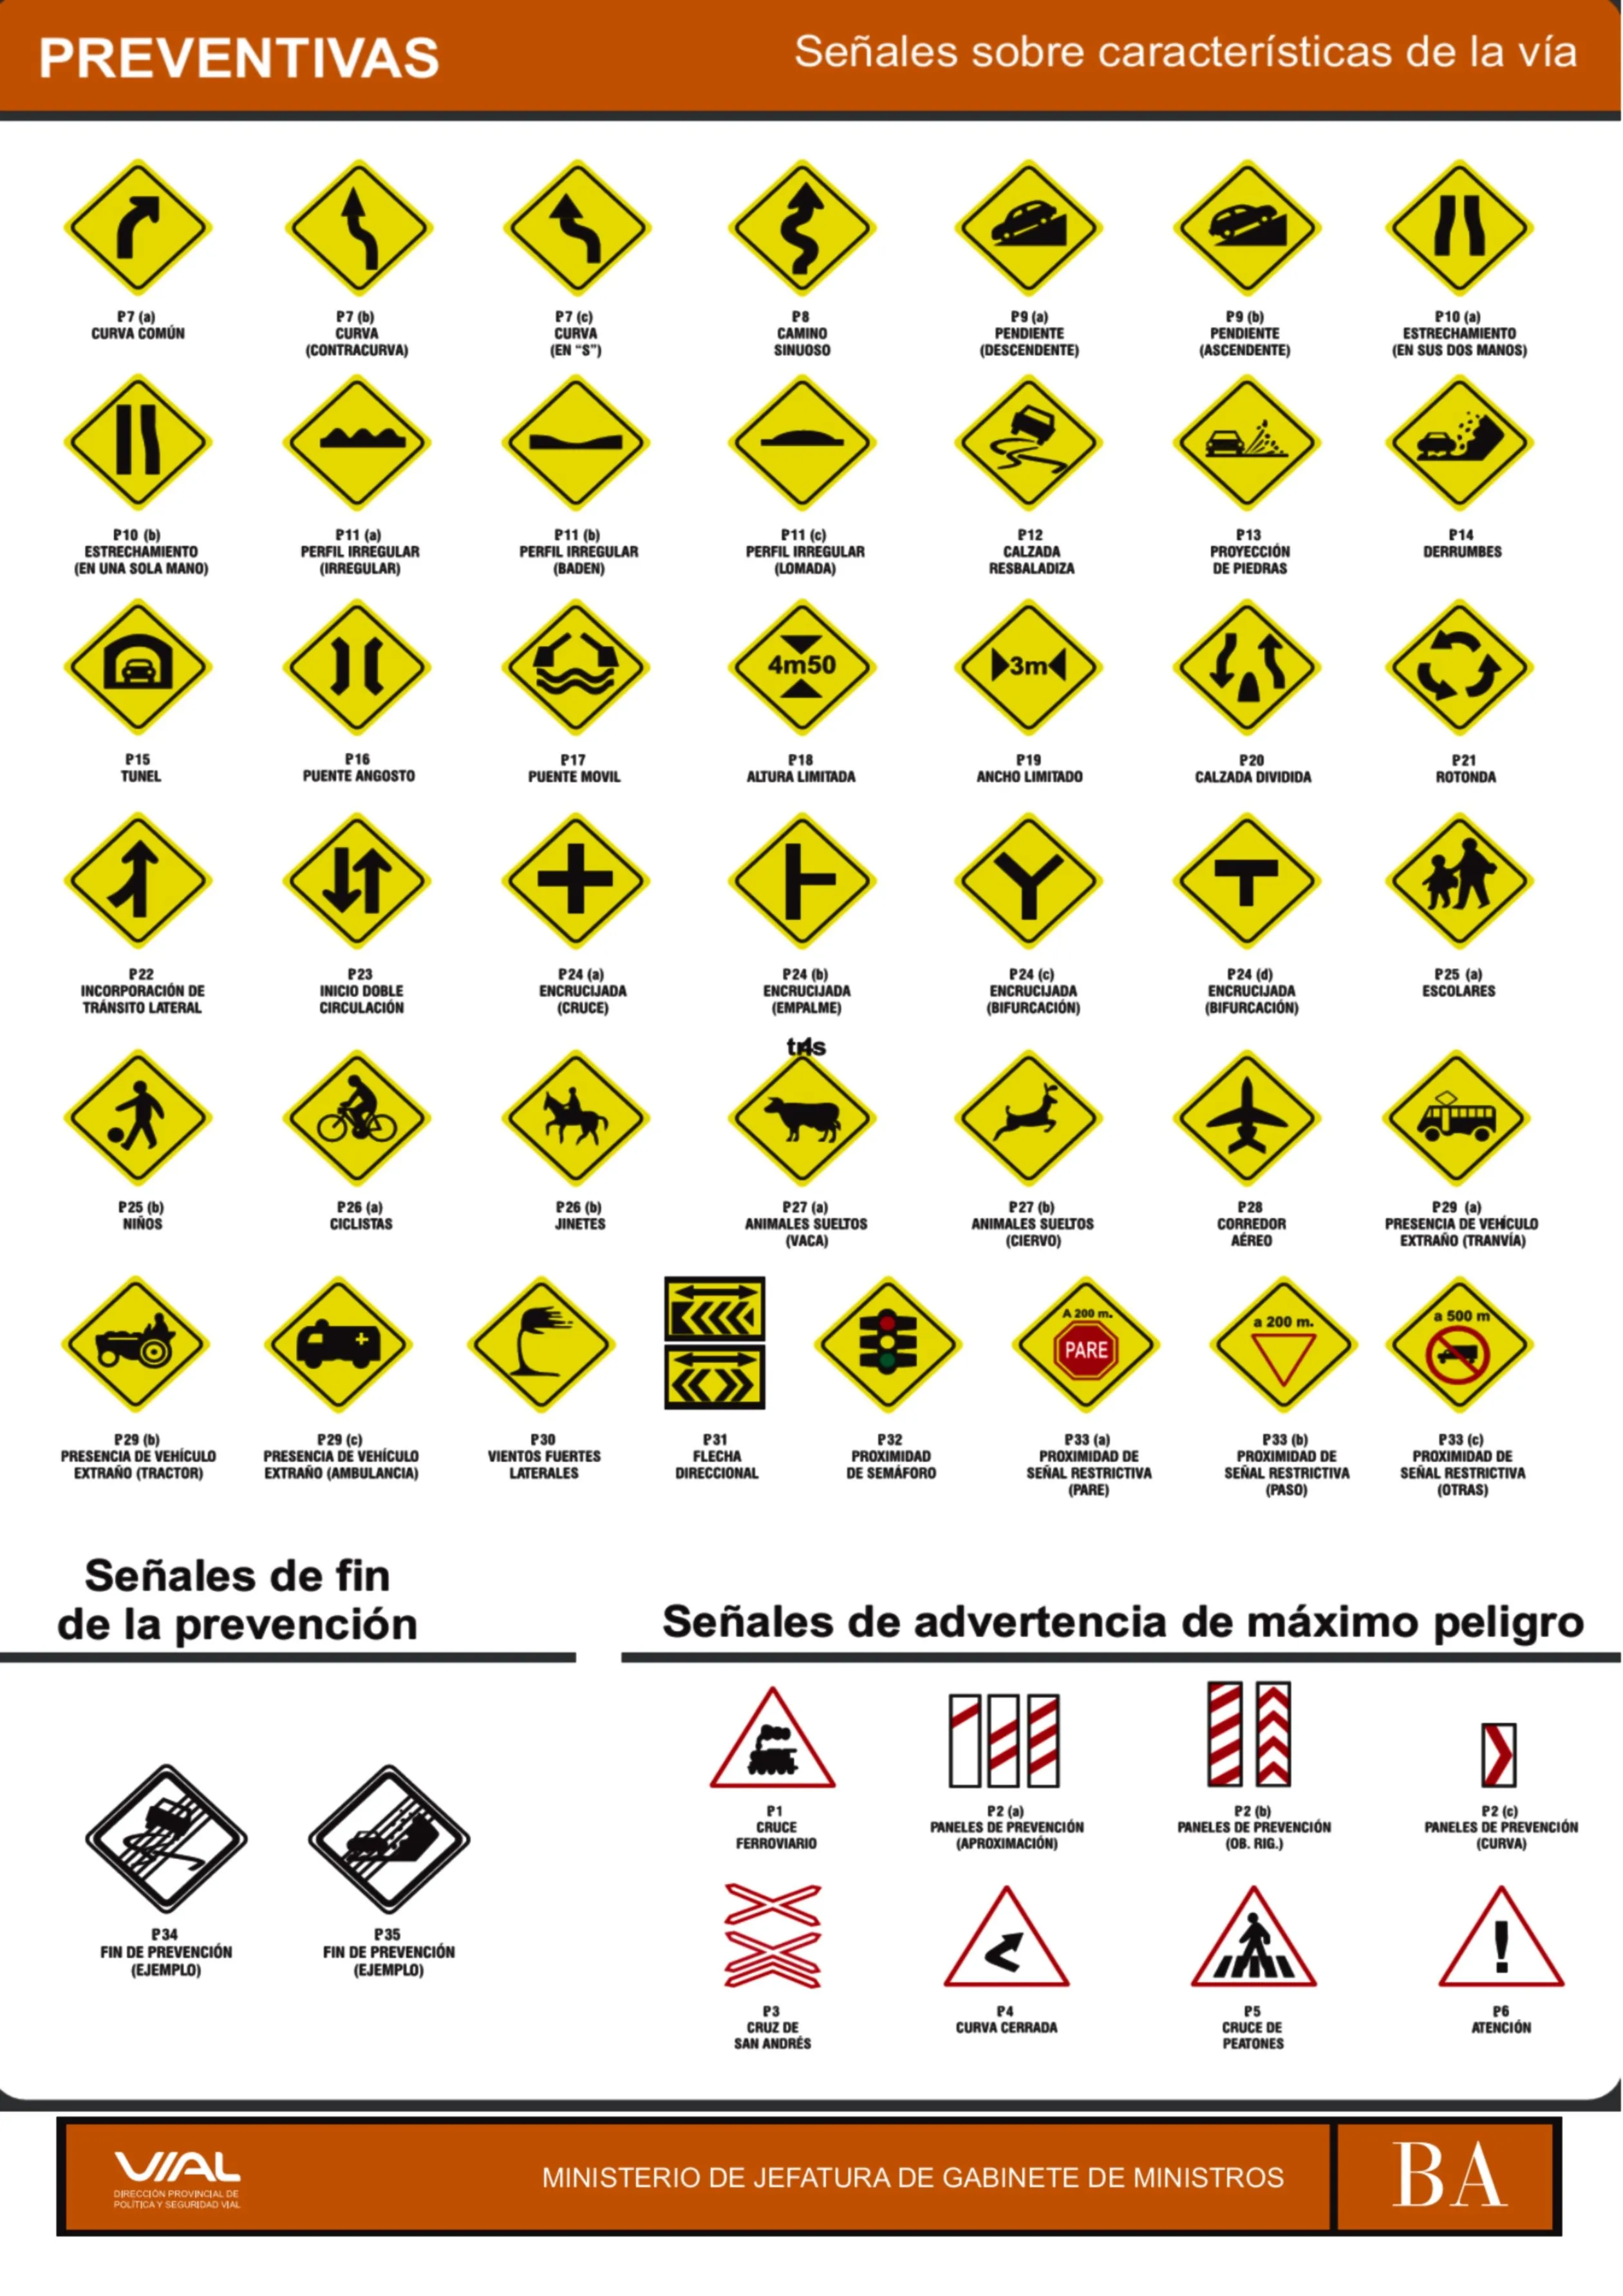 Mapa Mural De Seales De Trnsito Preventivas 3x6 Hojas Carta | Best ...